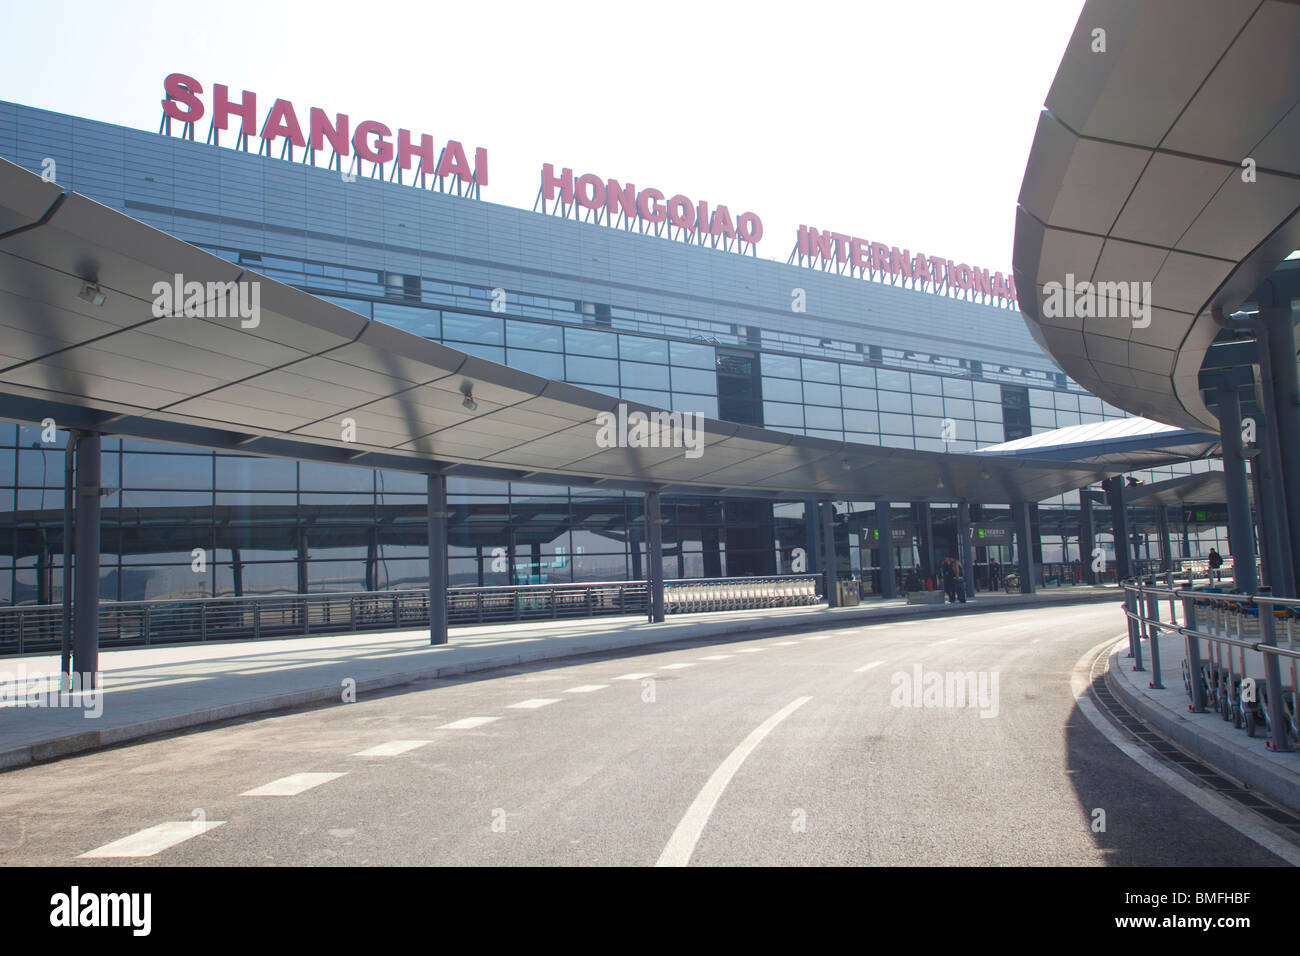 Shanghai Hongqiao International Airport, Shanghai, China Stock Photo - Alamy